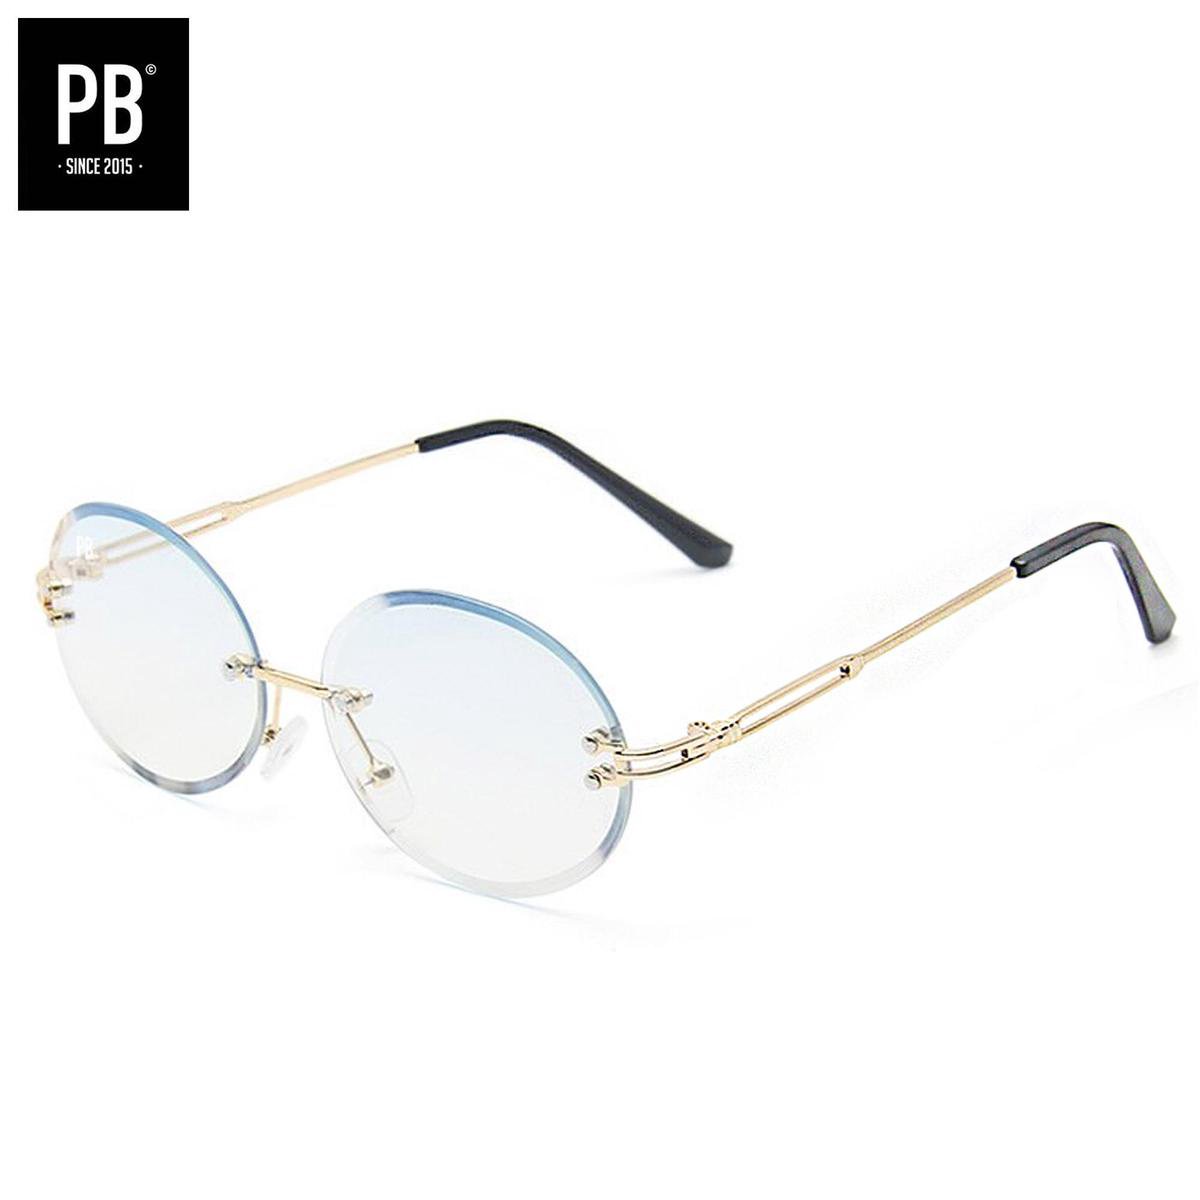 PB Sunglasses - Gipsy Oval Trans Blue. - Zonnebril heren en dames - Licht blauwe lens - Randloze zonnebril - Festival